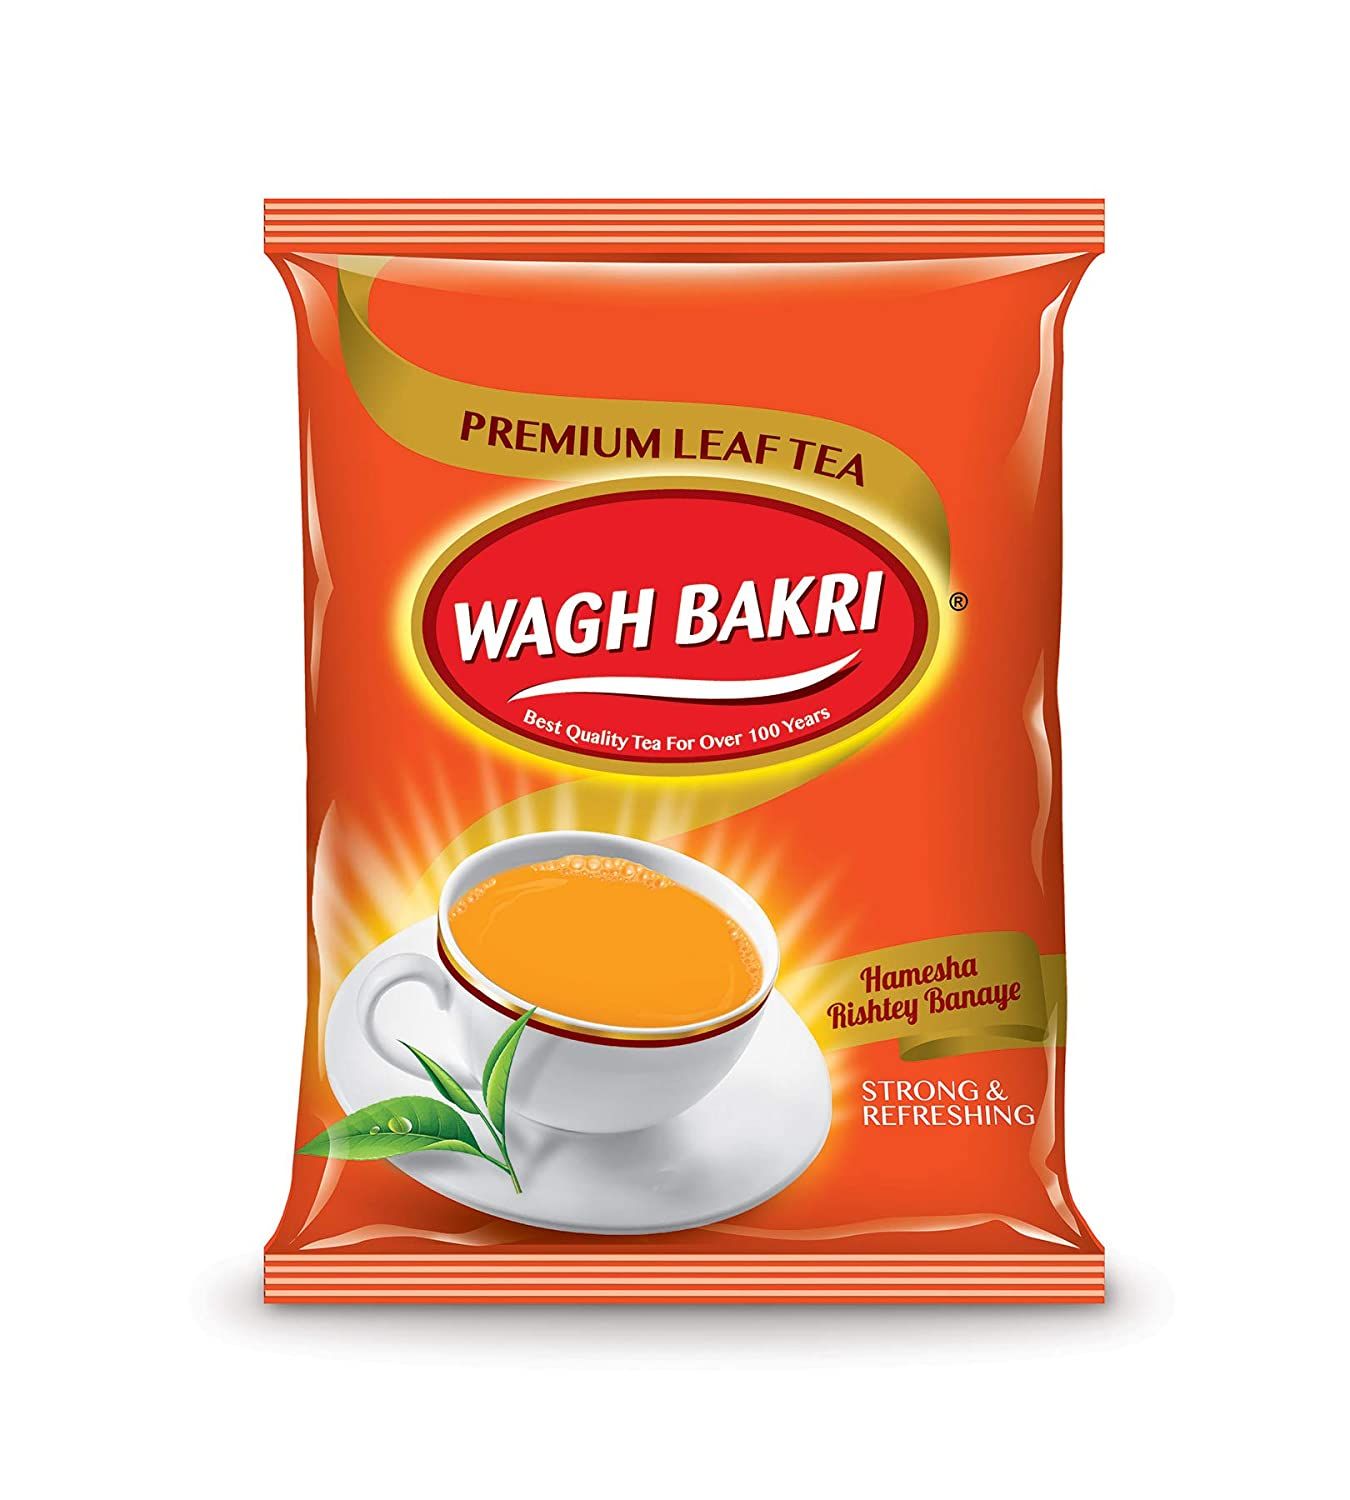 Wagh Bakri Premium Leaf Tea Image